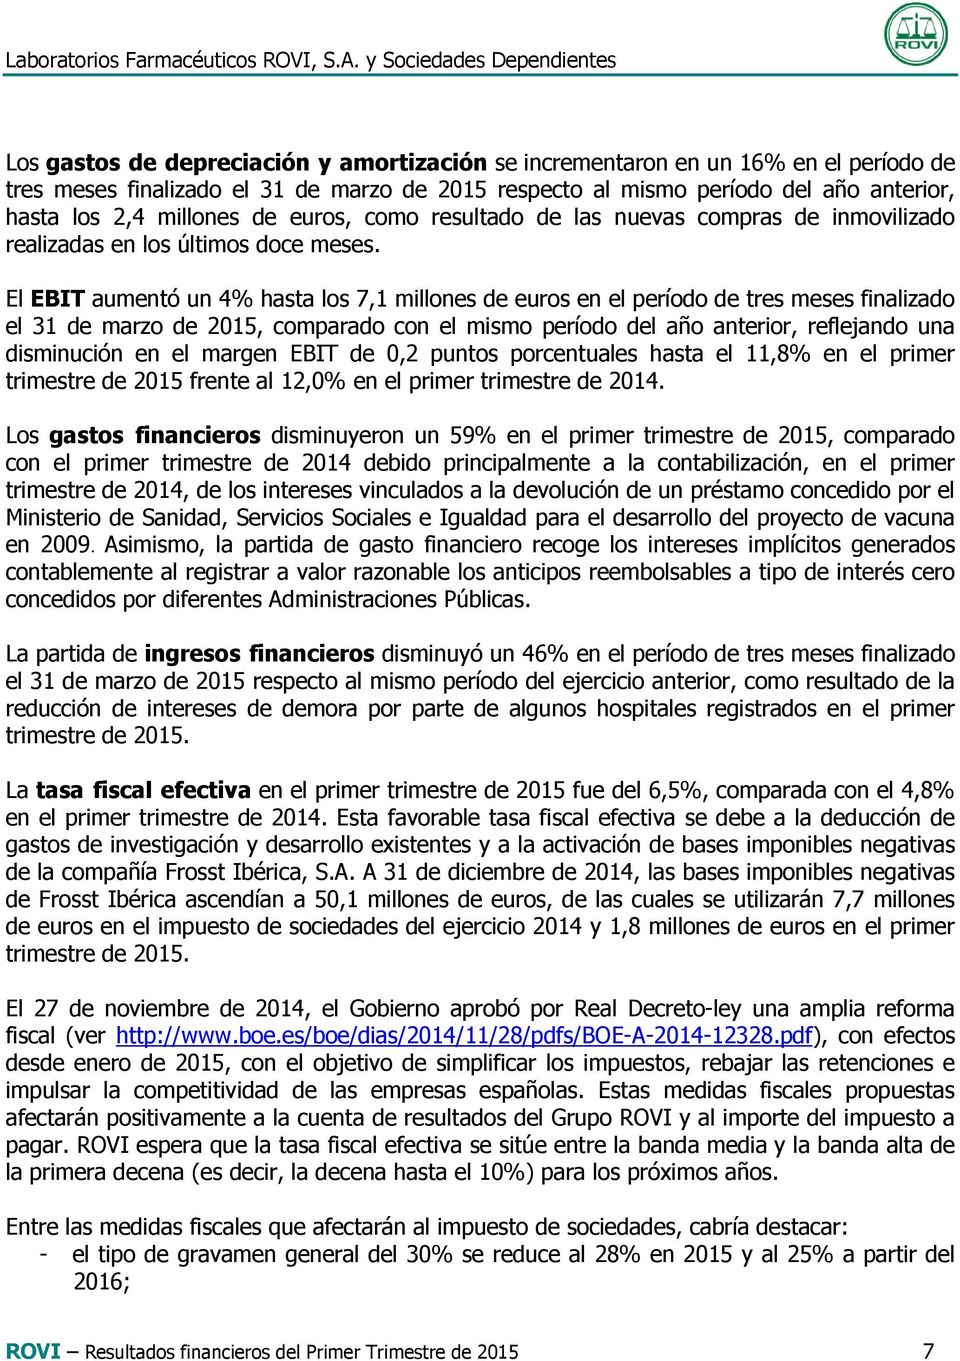 El EBIT aumentó un 4% hasta los 7,1 millones de euros en el período de tres meses finalizado el 31 de marzo de 2015, comparado con el mismo período del año anterior, reflejando una disminución en el